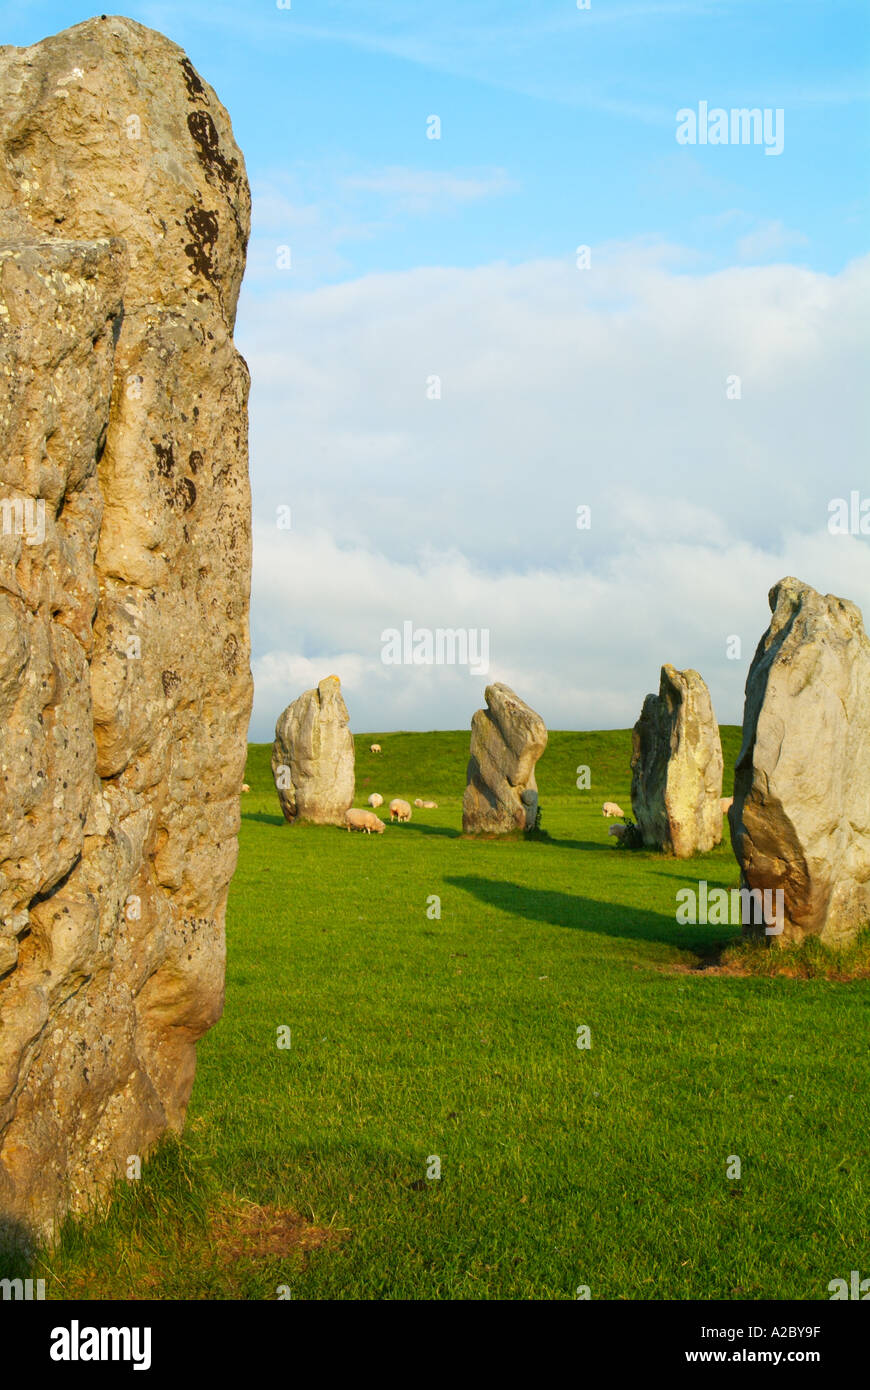 Grande pierre monolithes de monument d'Avebury dans le Wiltshire un site du patrimoine mondial Wessex Angleterre UK GB EU Europe Banque D'Images